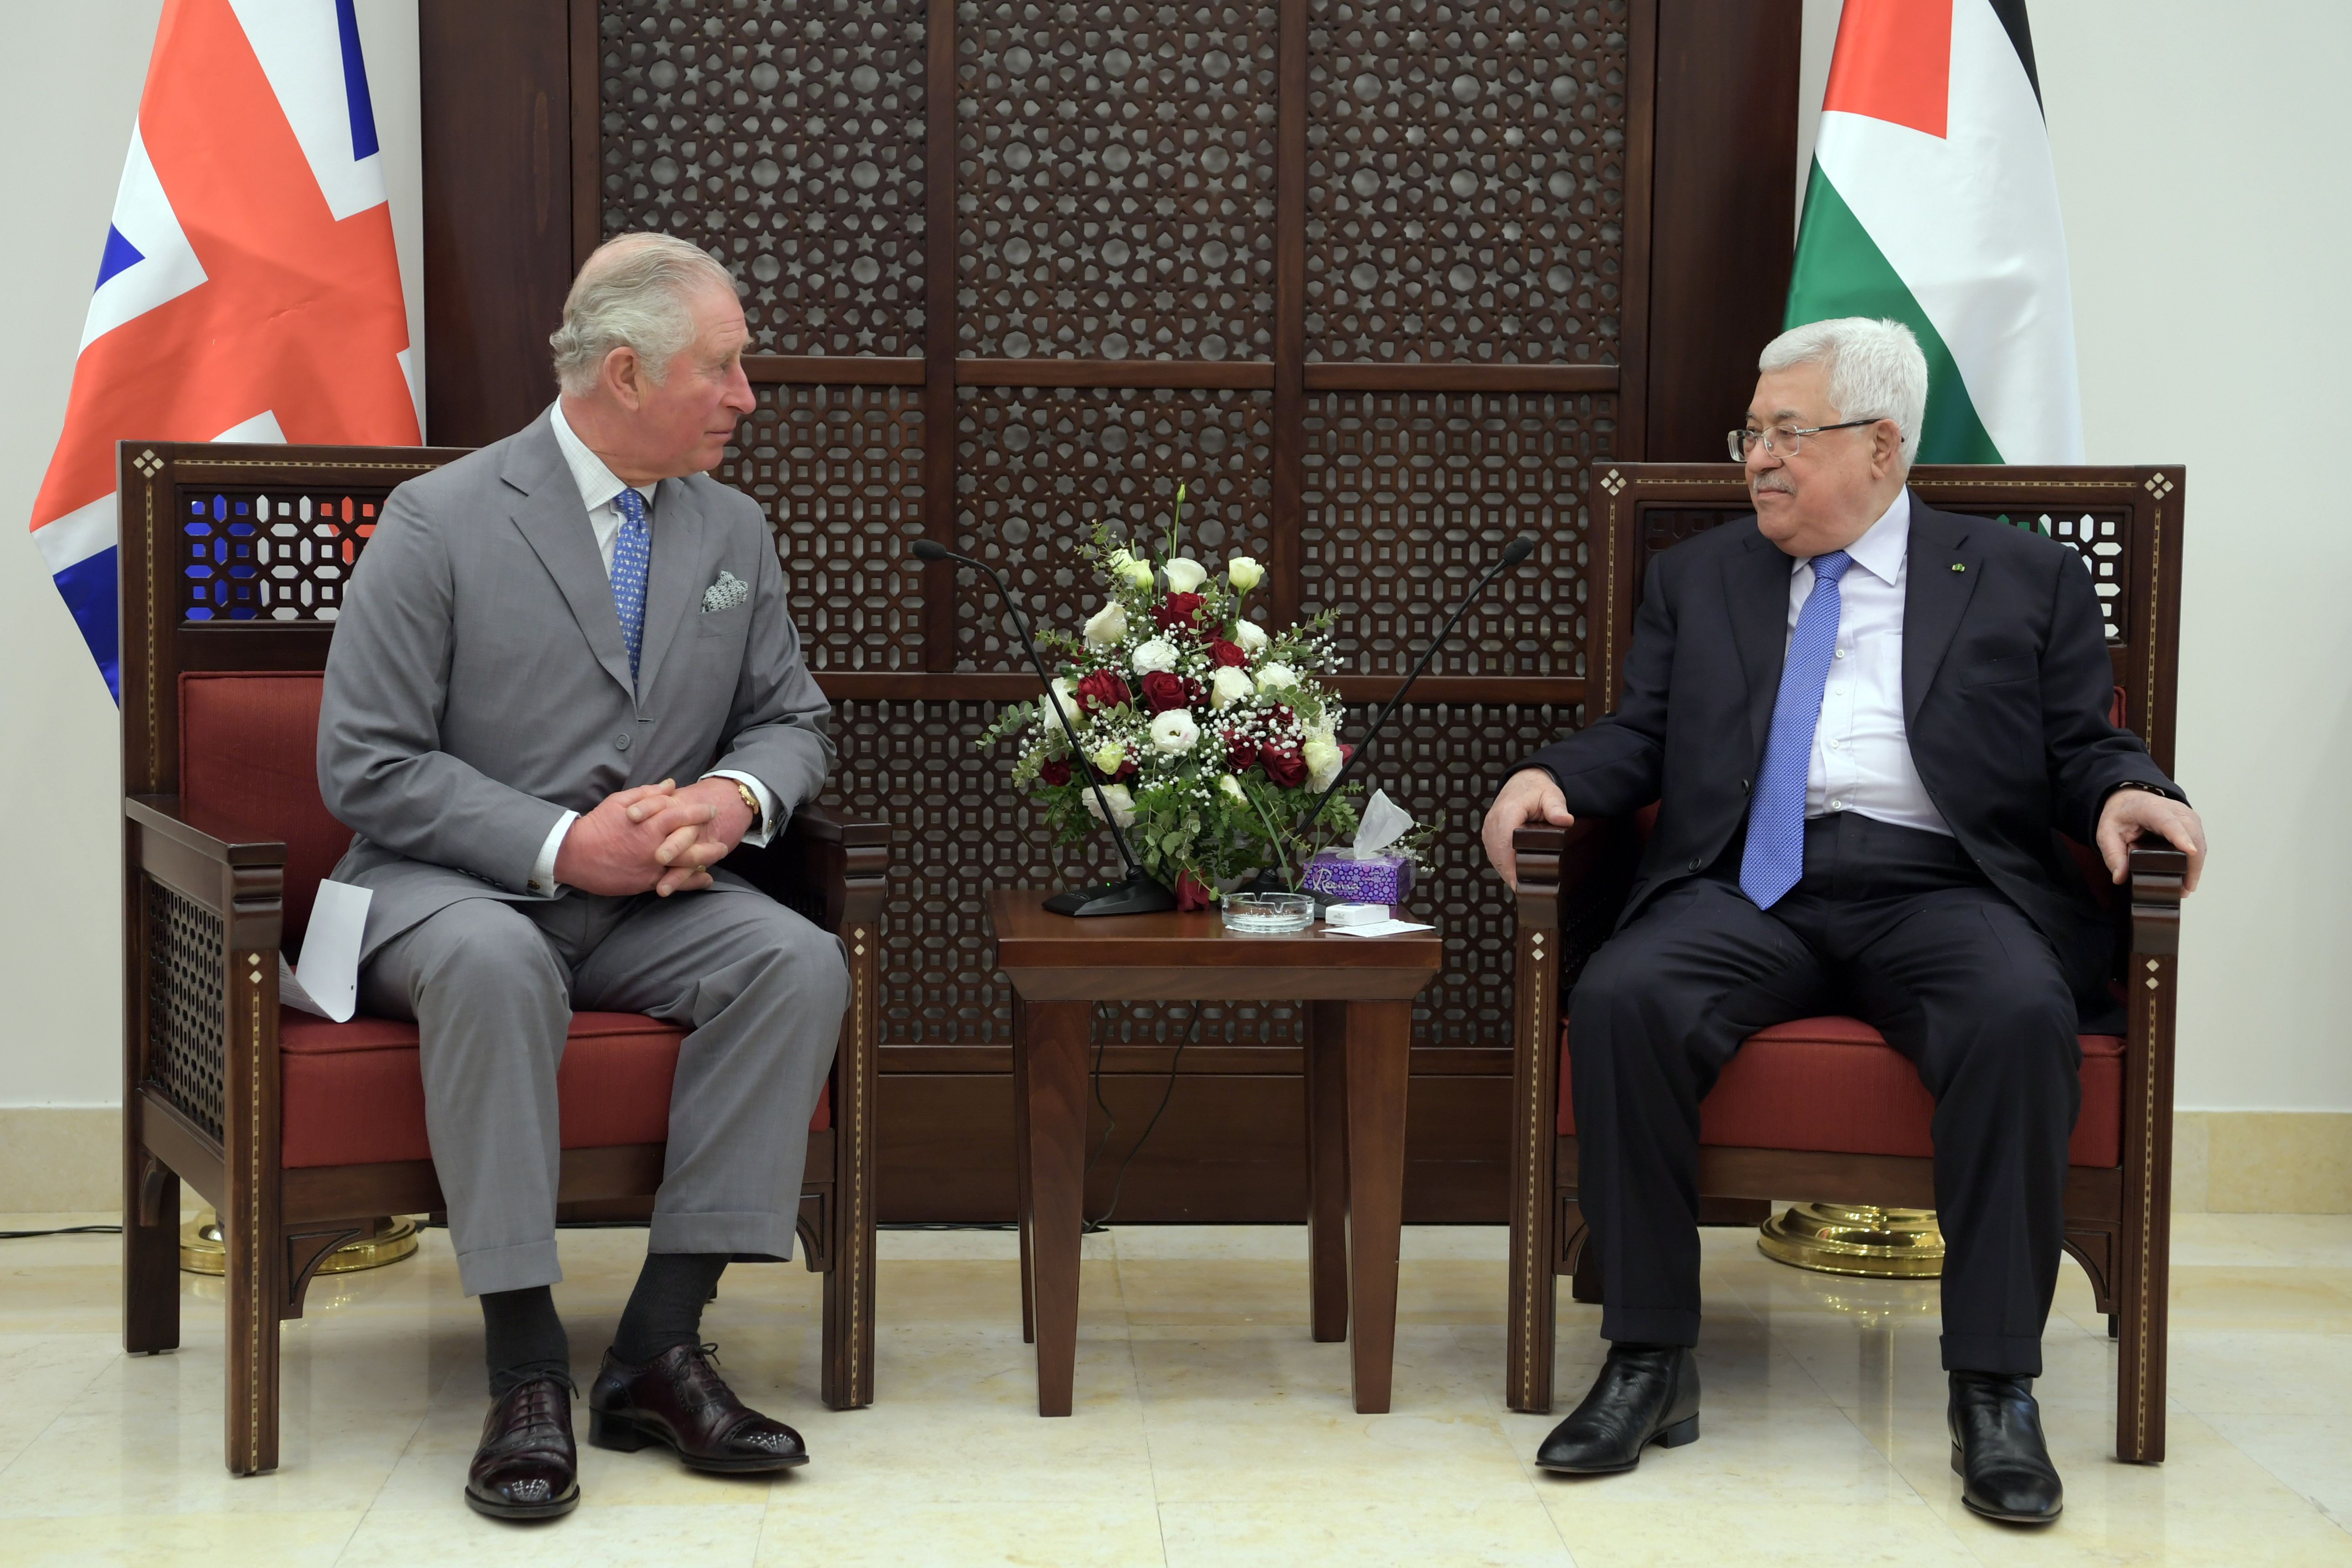 President Abbas receives Prince Charles